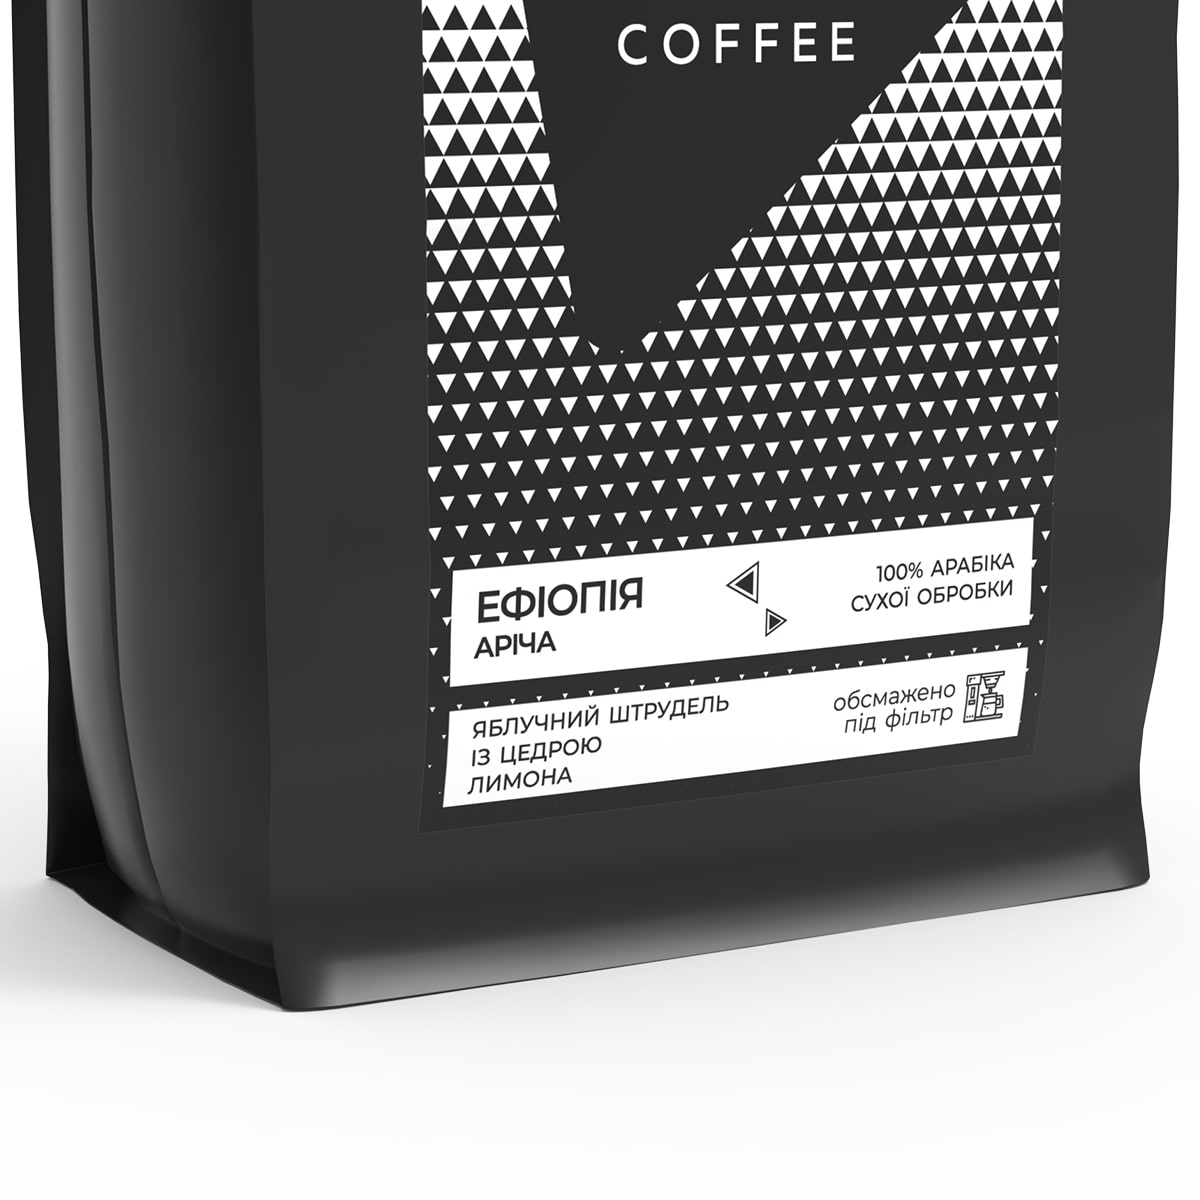 Кава у зернах Bedoin Coffee Ефіопія Аріча 1 кг - фото 2